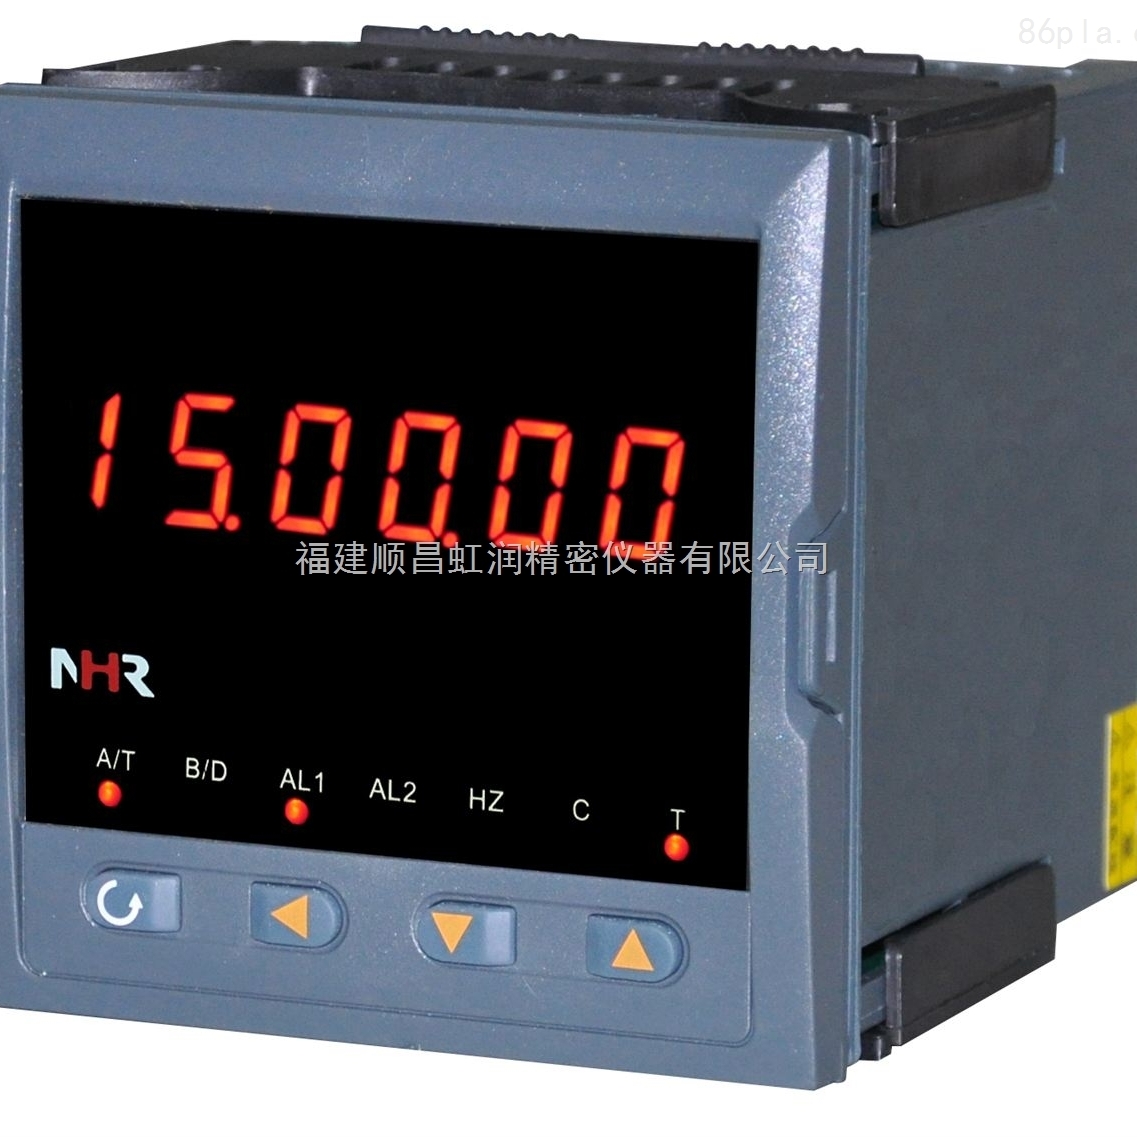 虹潤NHR-XTRT系列溫度遠傳監測儀